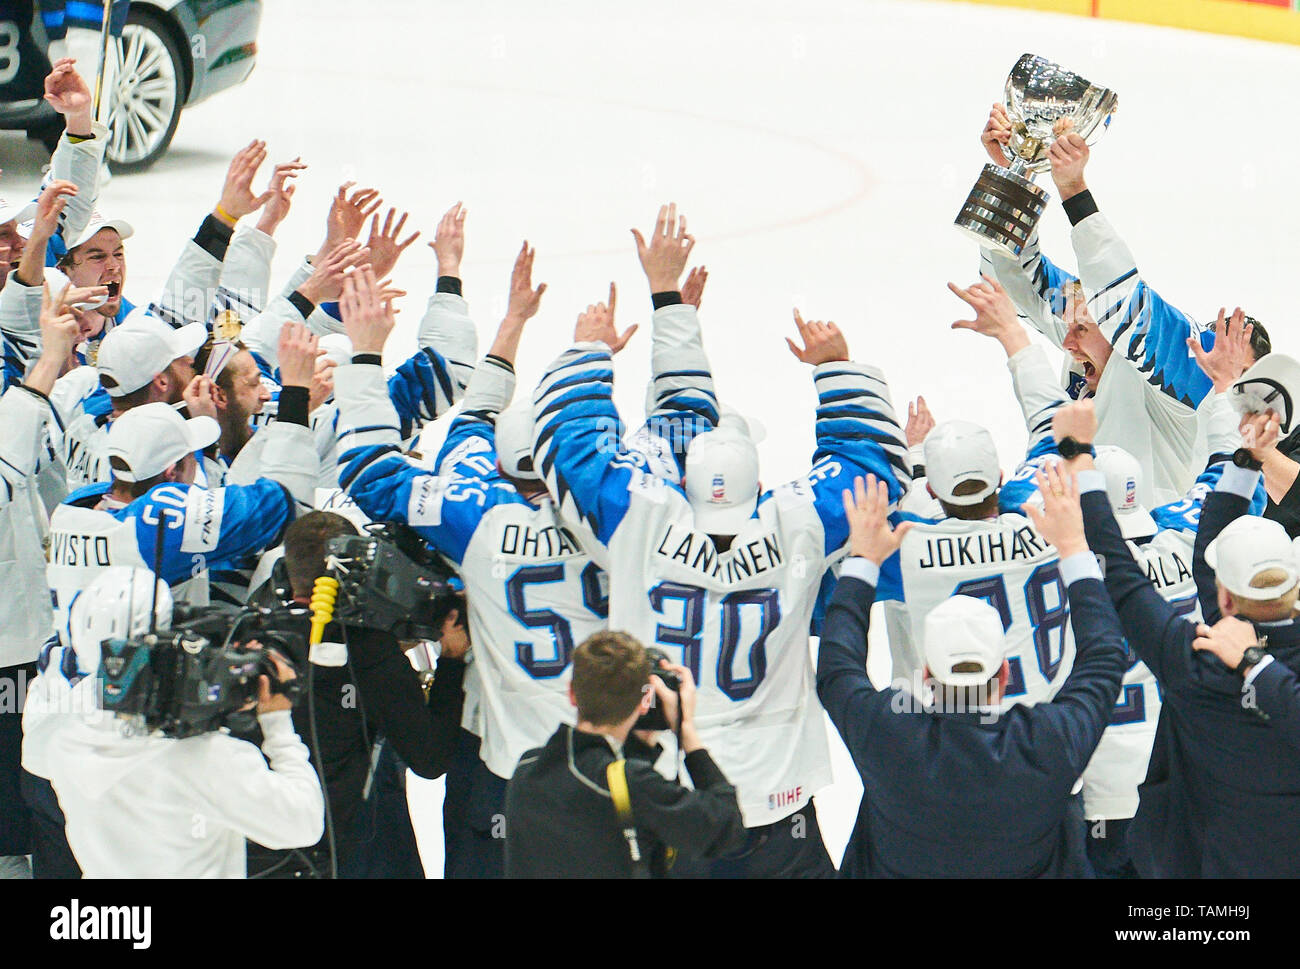 Bratislava, Slovacchia. 26 Maggio, 2019. Marko Anttila, aletta 12, la Finlandia ha vinto il titolo e celebrare, tifo, gioia, emozioni, celebrando, ridere, tifo, rallegratevi, sistemando i bracci, stringendo il pugno, celebrare, celebrazione Torjubel, CANADA - FINLANDIA 1-3 Kanada - Finnland FINAL IIHF Hockey su ghiaccio ai campionati mondiali di Bratislava, Slovacchia, Slowakei, 26 maggio 2019, STAGIONE 2018/2019, Credito: Peter Schatz/Alamy Live News Foto Stock